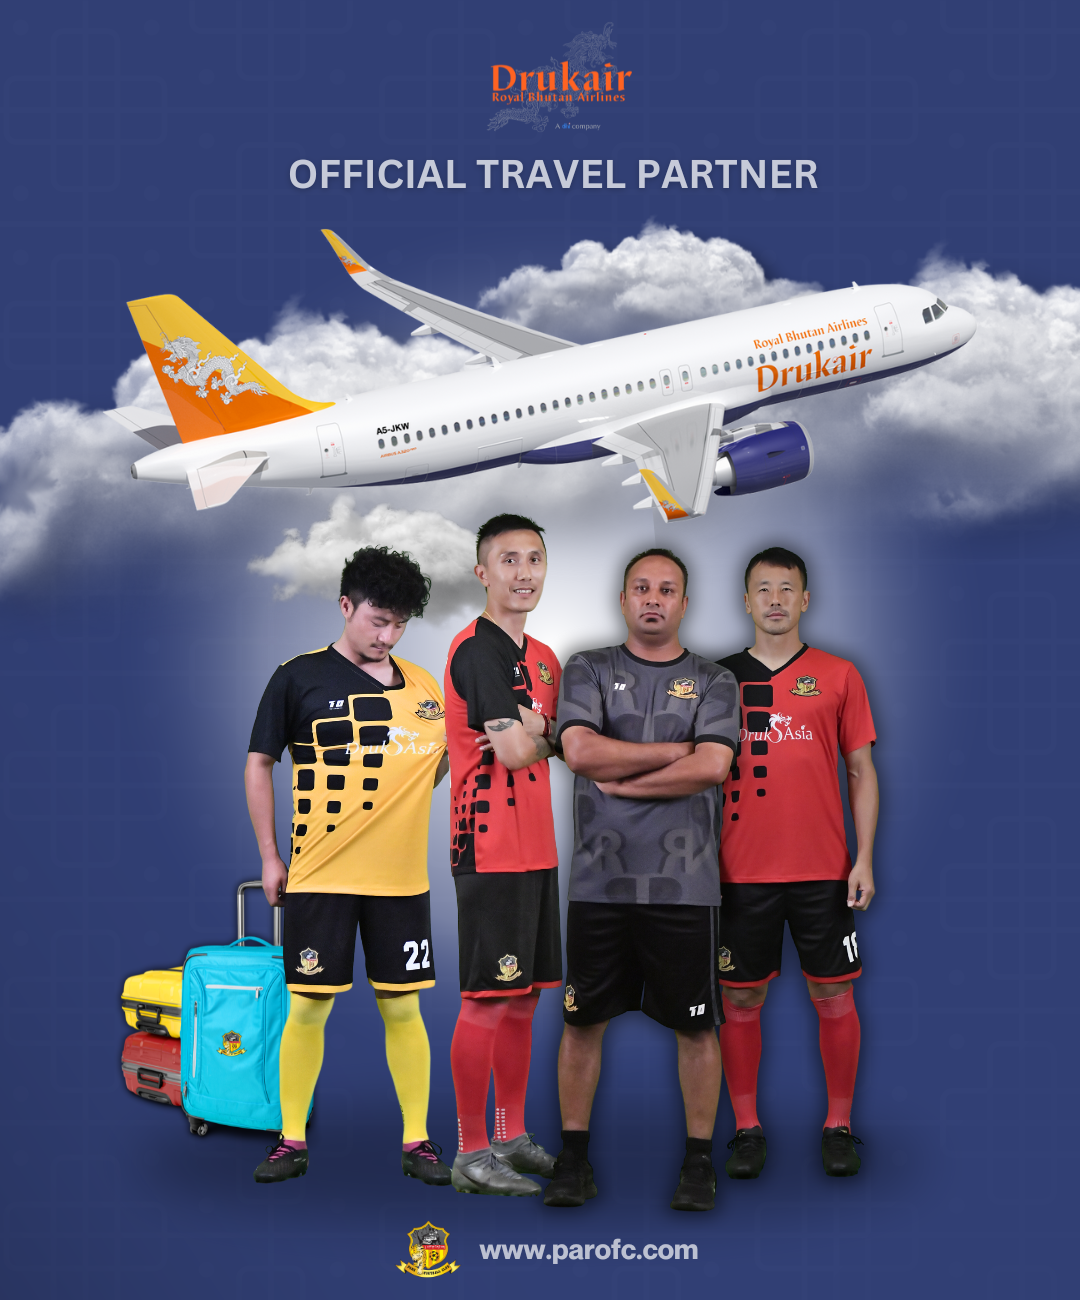 Druk Air: The Proud Travel Partner of Paro FC